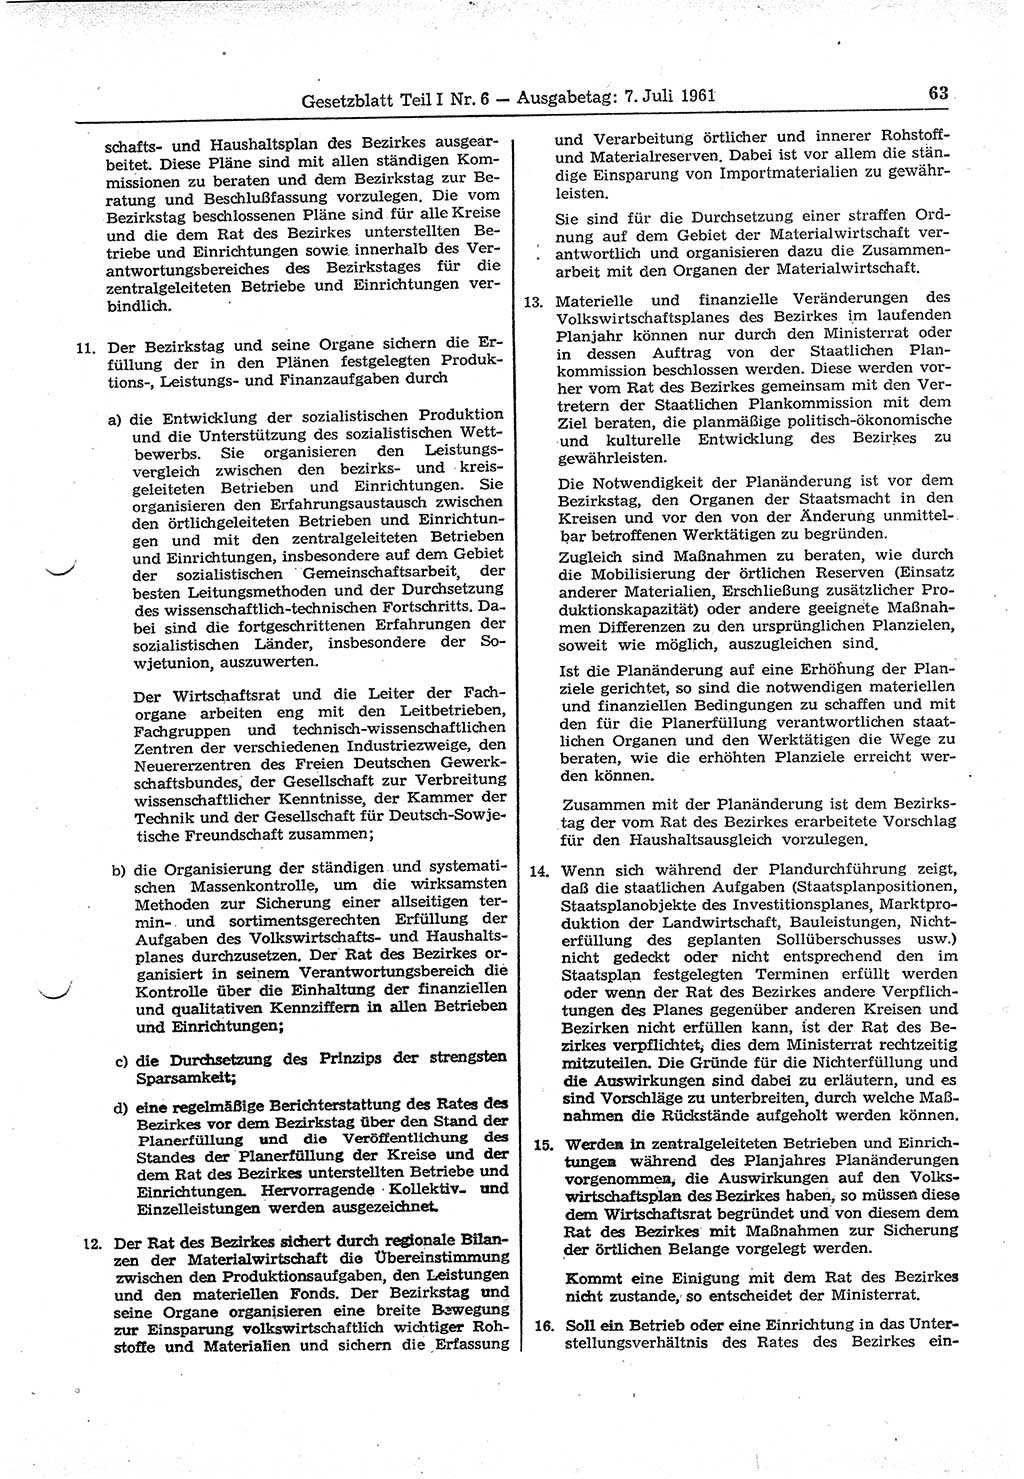 Gesetzblatt (GBl.) der Deutschen Demokratischen Republik (DDR) Teil Ⅰ 1961, Seite 63 (GBl. DDR Ⅰ 1961, S. 63)